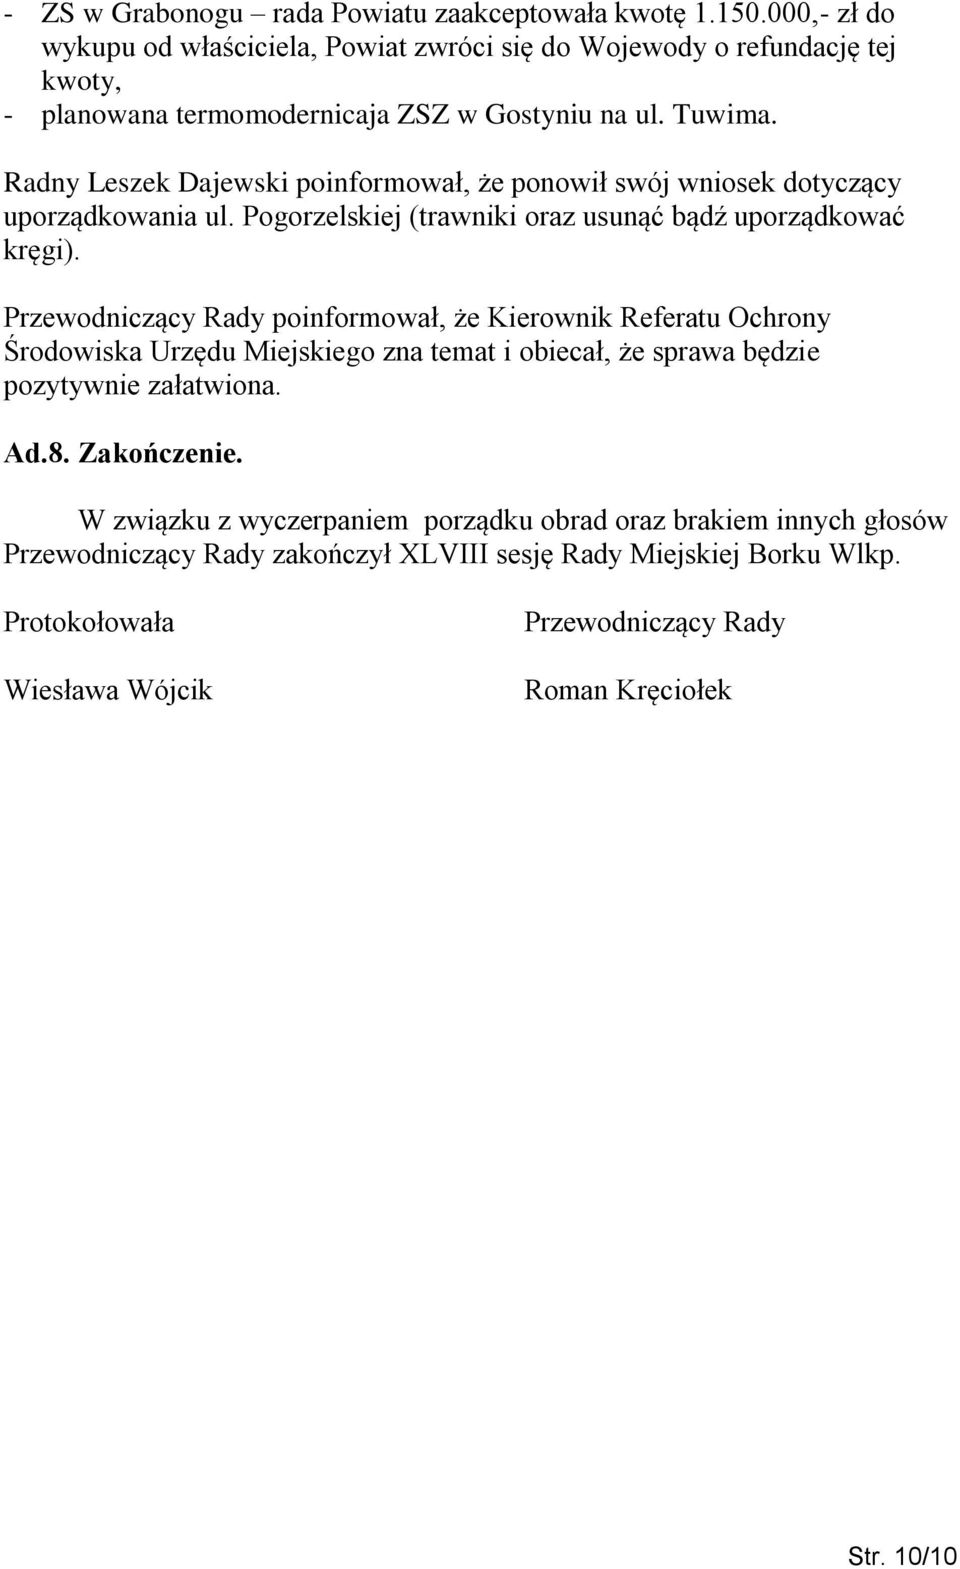 Radny Leszek Dajewski poinformował, że ponowił swój wniosek dotyczący uporządkowania ul. Pogorzelskiej (trawniki oraz usunąć bądź uporządkować kręgi).